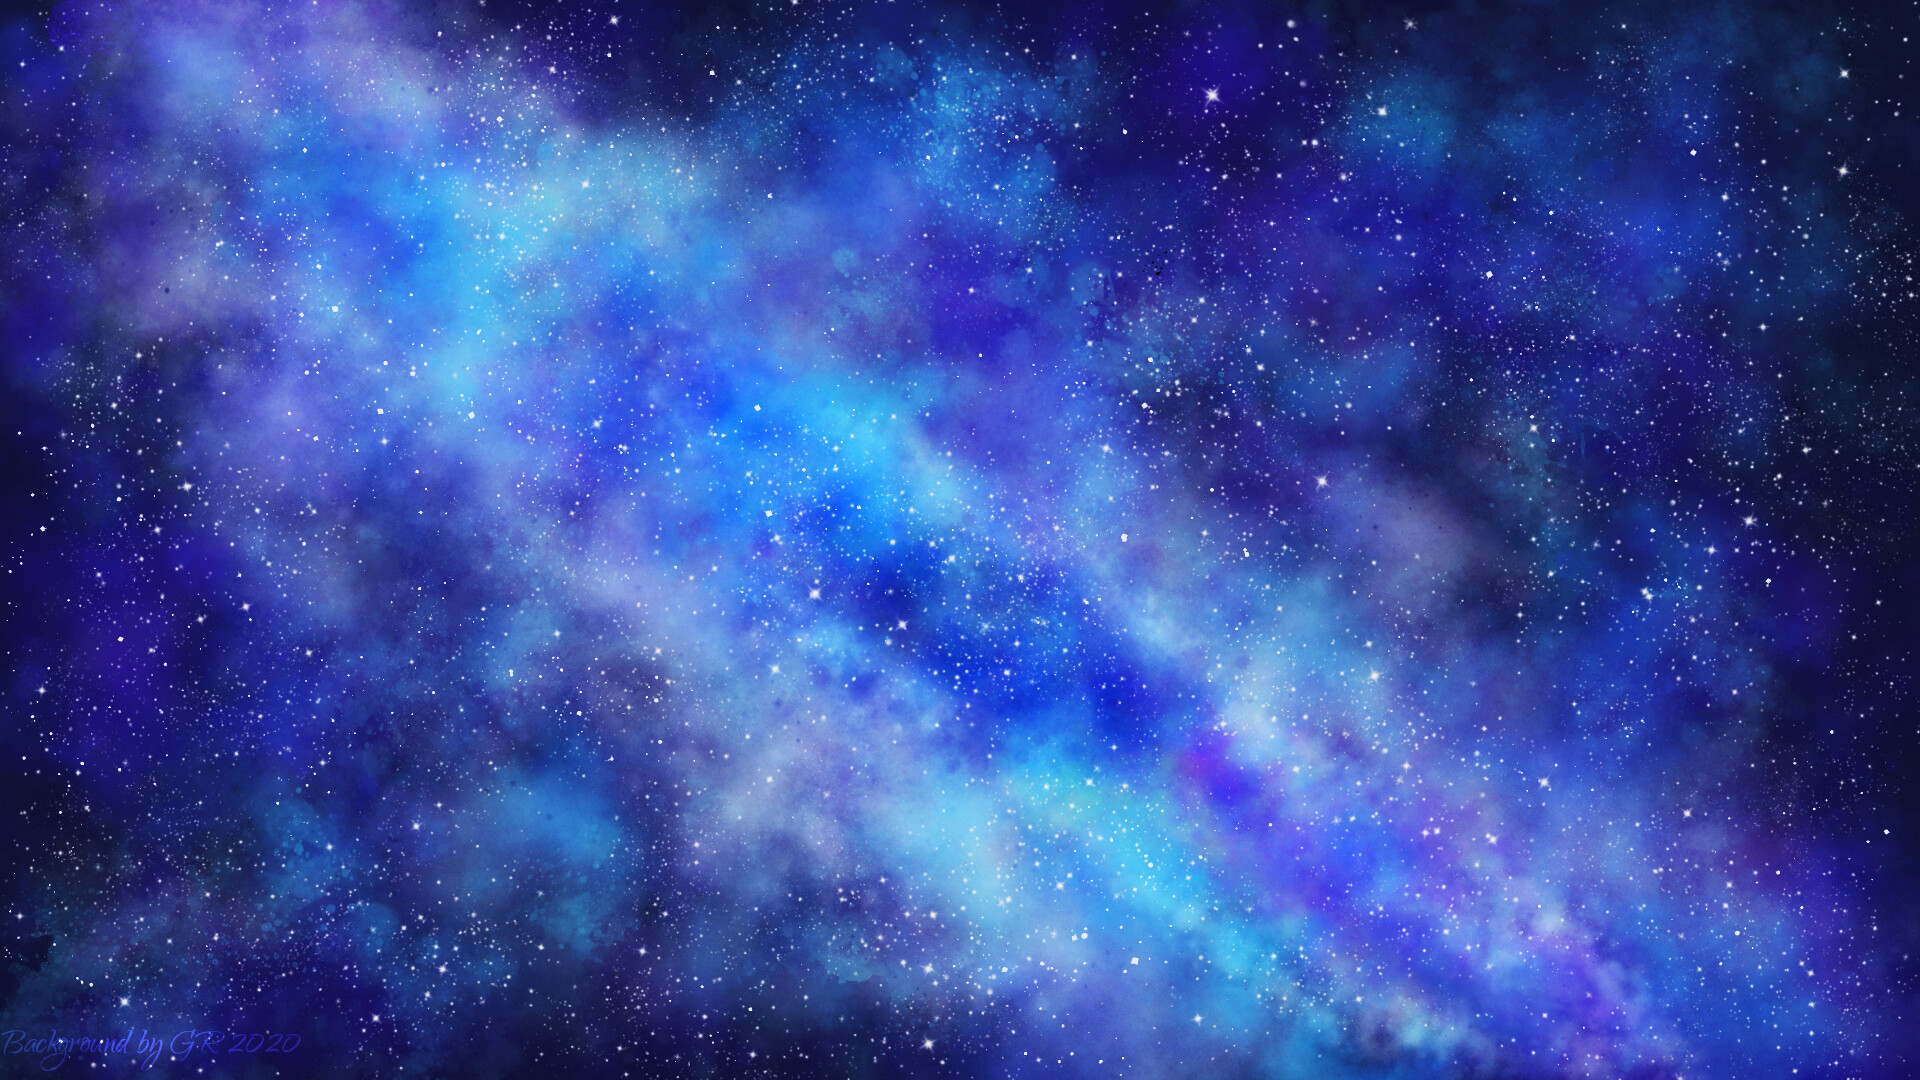 Thiên Hà - Những hình ảnh về thiên hà đầy mê hoặc và kỳ diệu với hàng triệu ngôi sao và các hành tinh xa xôi sẽ khiến bạn vô cùng thích thú và ngạc nhiên. Hãy khám phá những bí ẩn trong thiên hà qua ảnh!